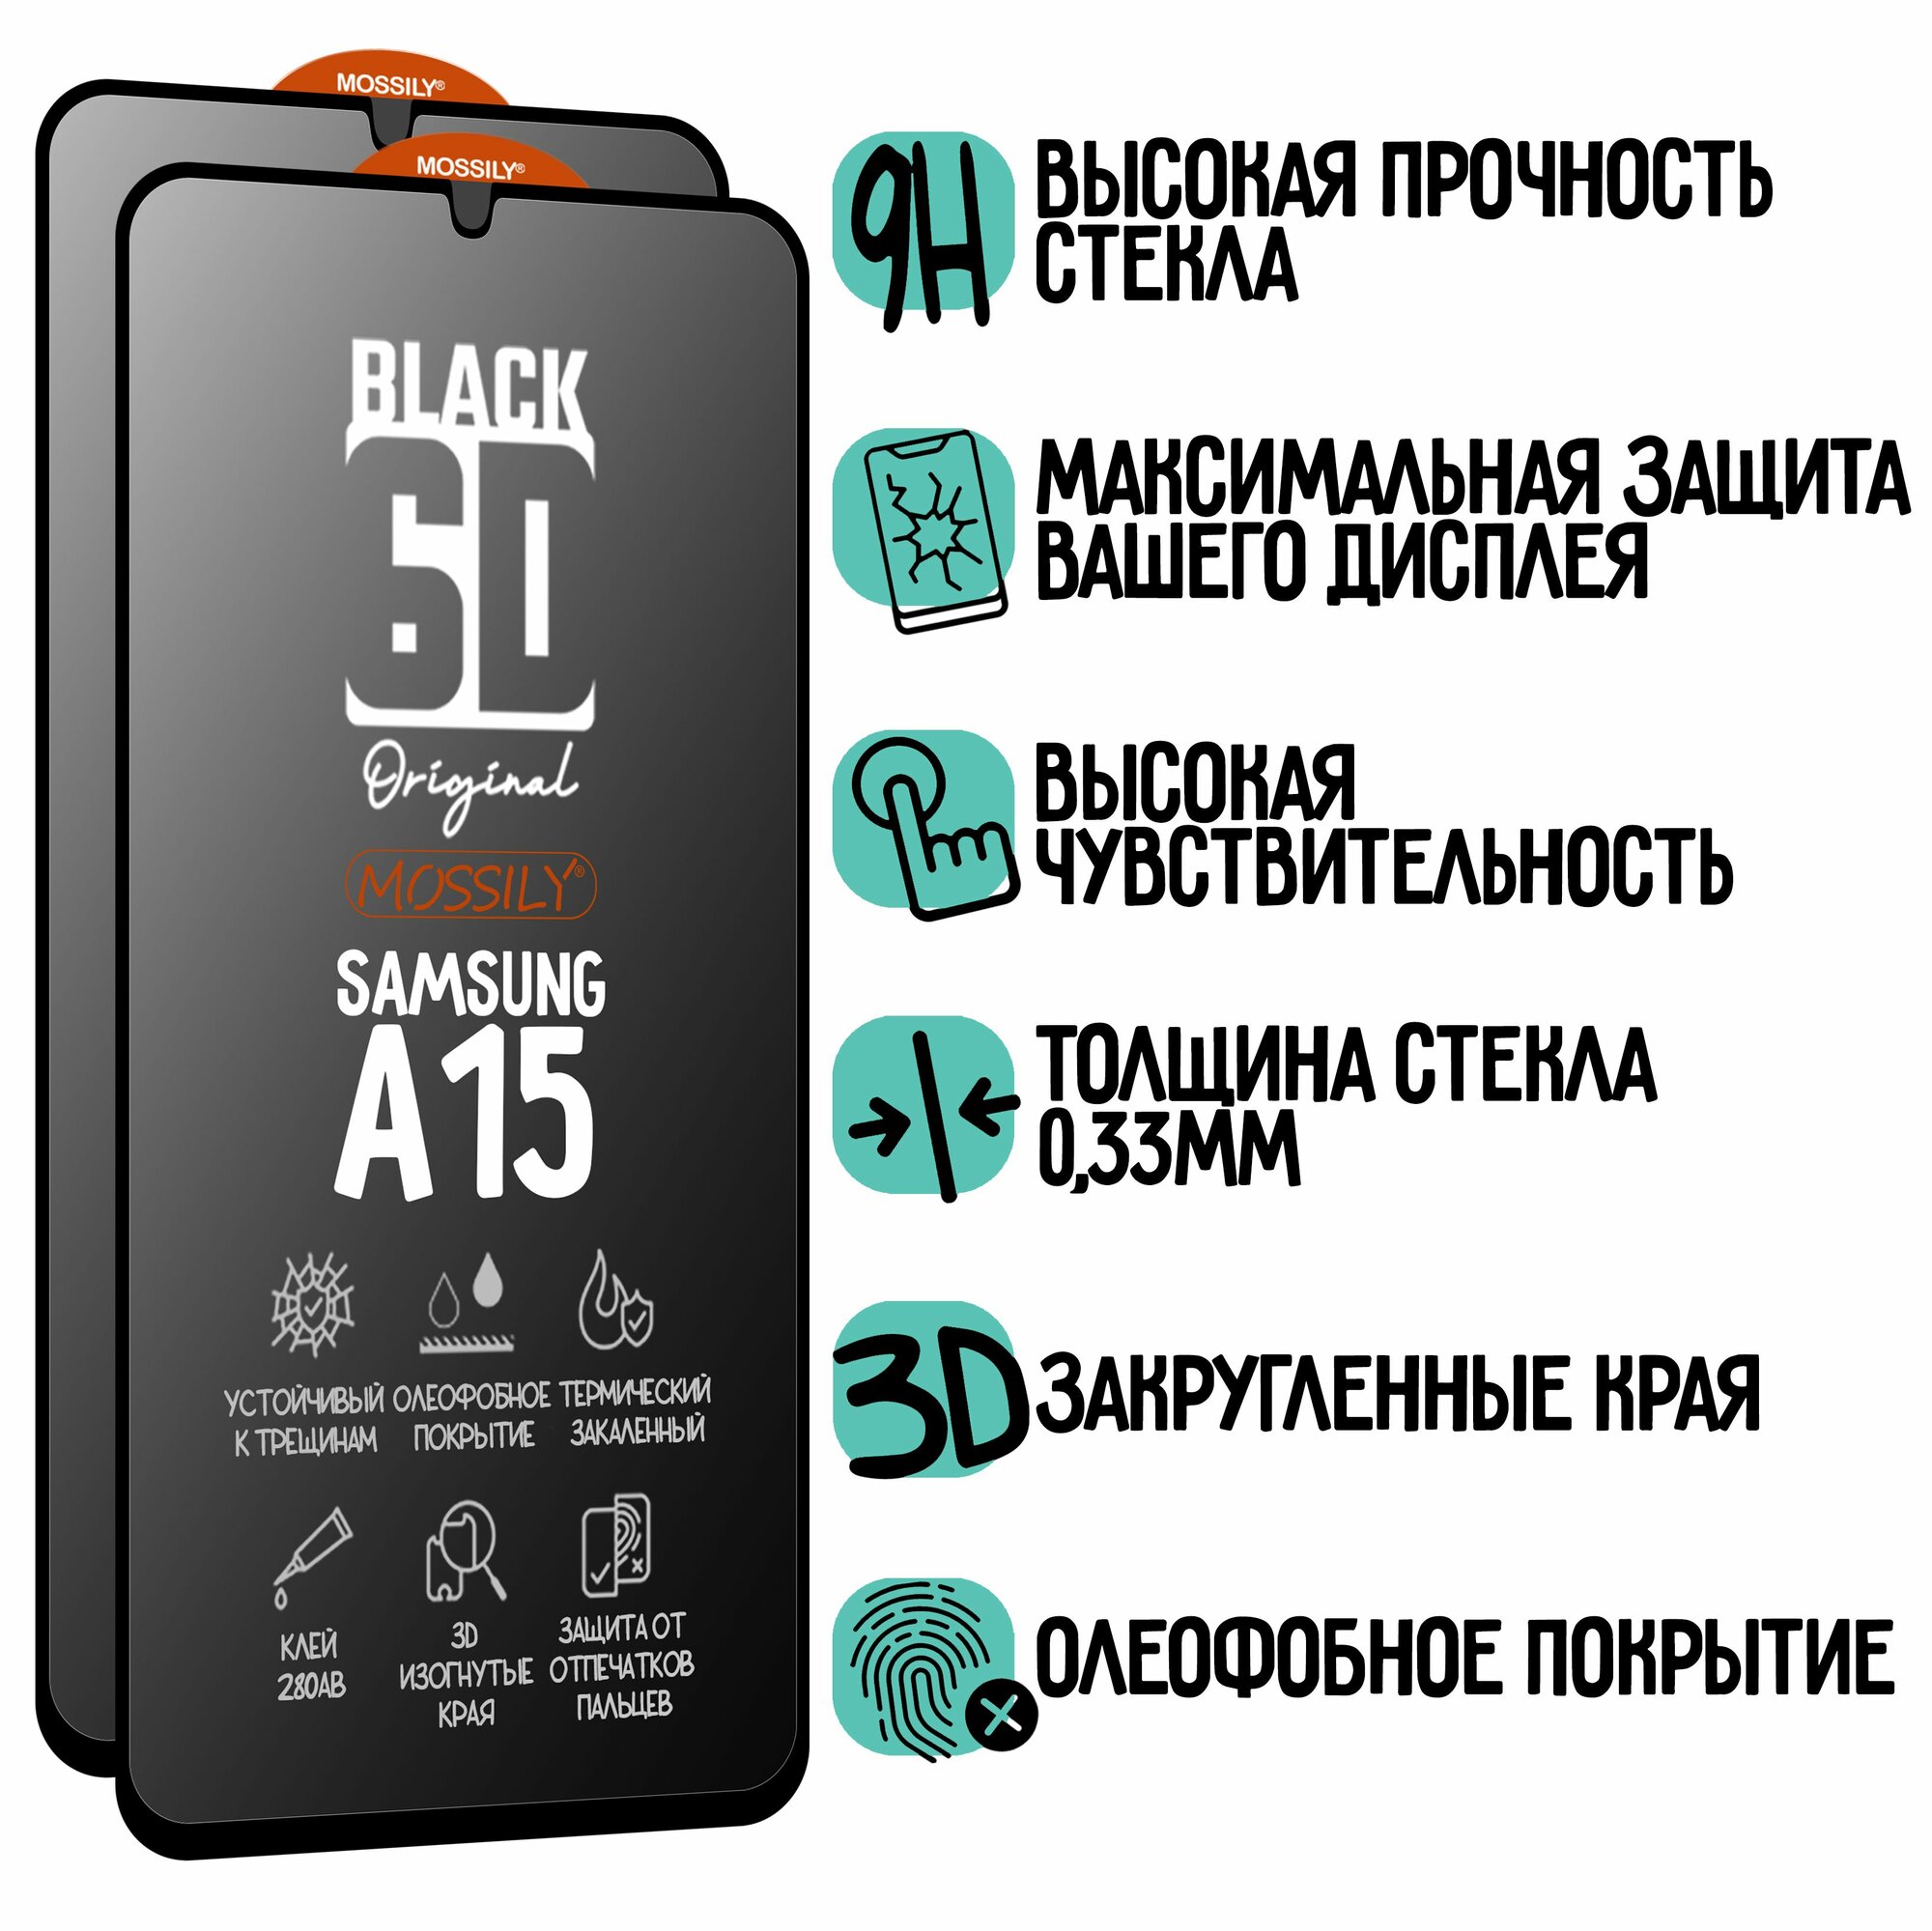 Защитное стекло 6D Black для Samsung Galaxy A15, Самсунг Галакси А15 (2шт), с олеофобным покрытием, толщиной 0.33мм, прозрачное с черной рамкой